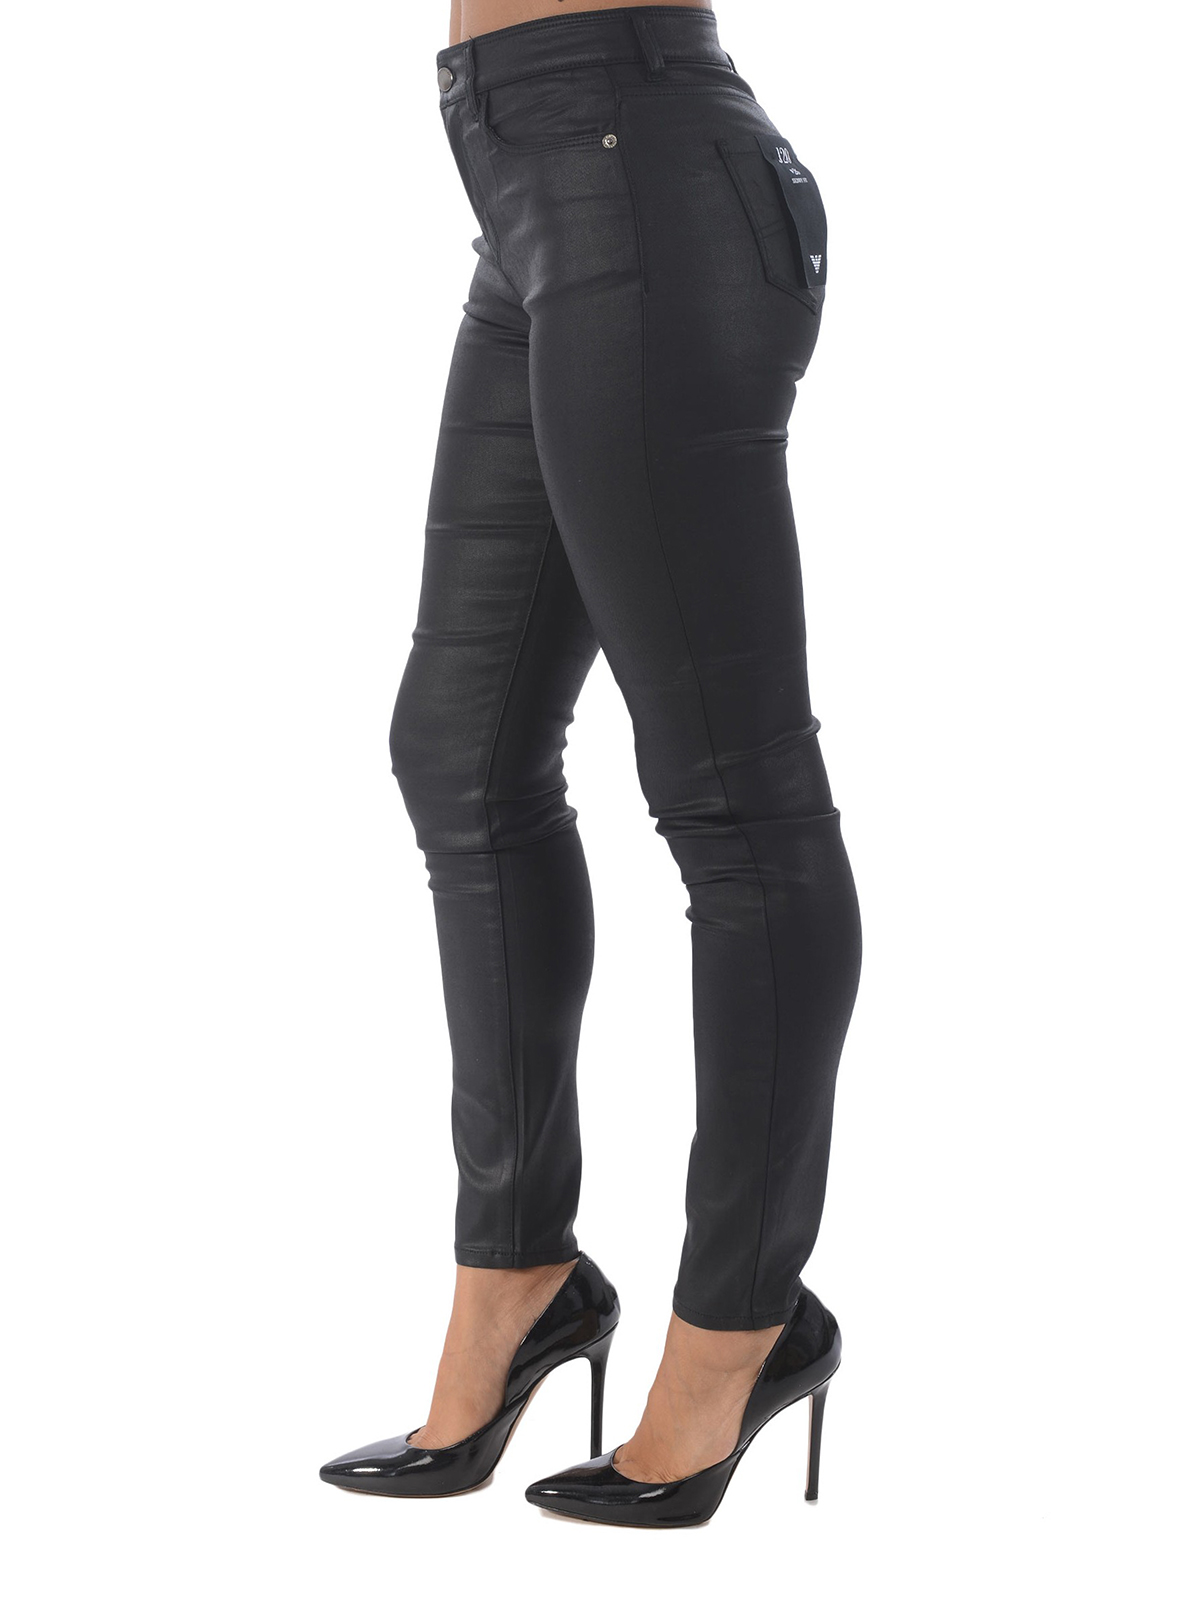 Skinny jeans Emporio Armani - J20 black coated skinny jeans -  6G2J202NSWZ0999